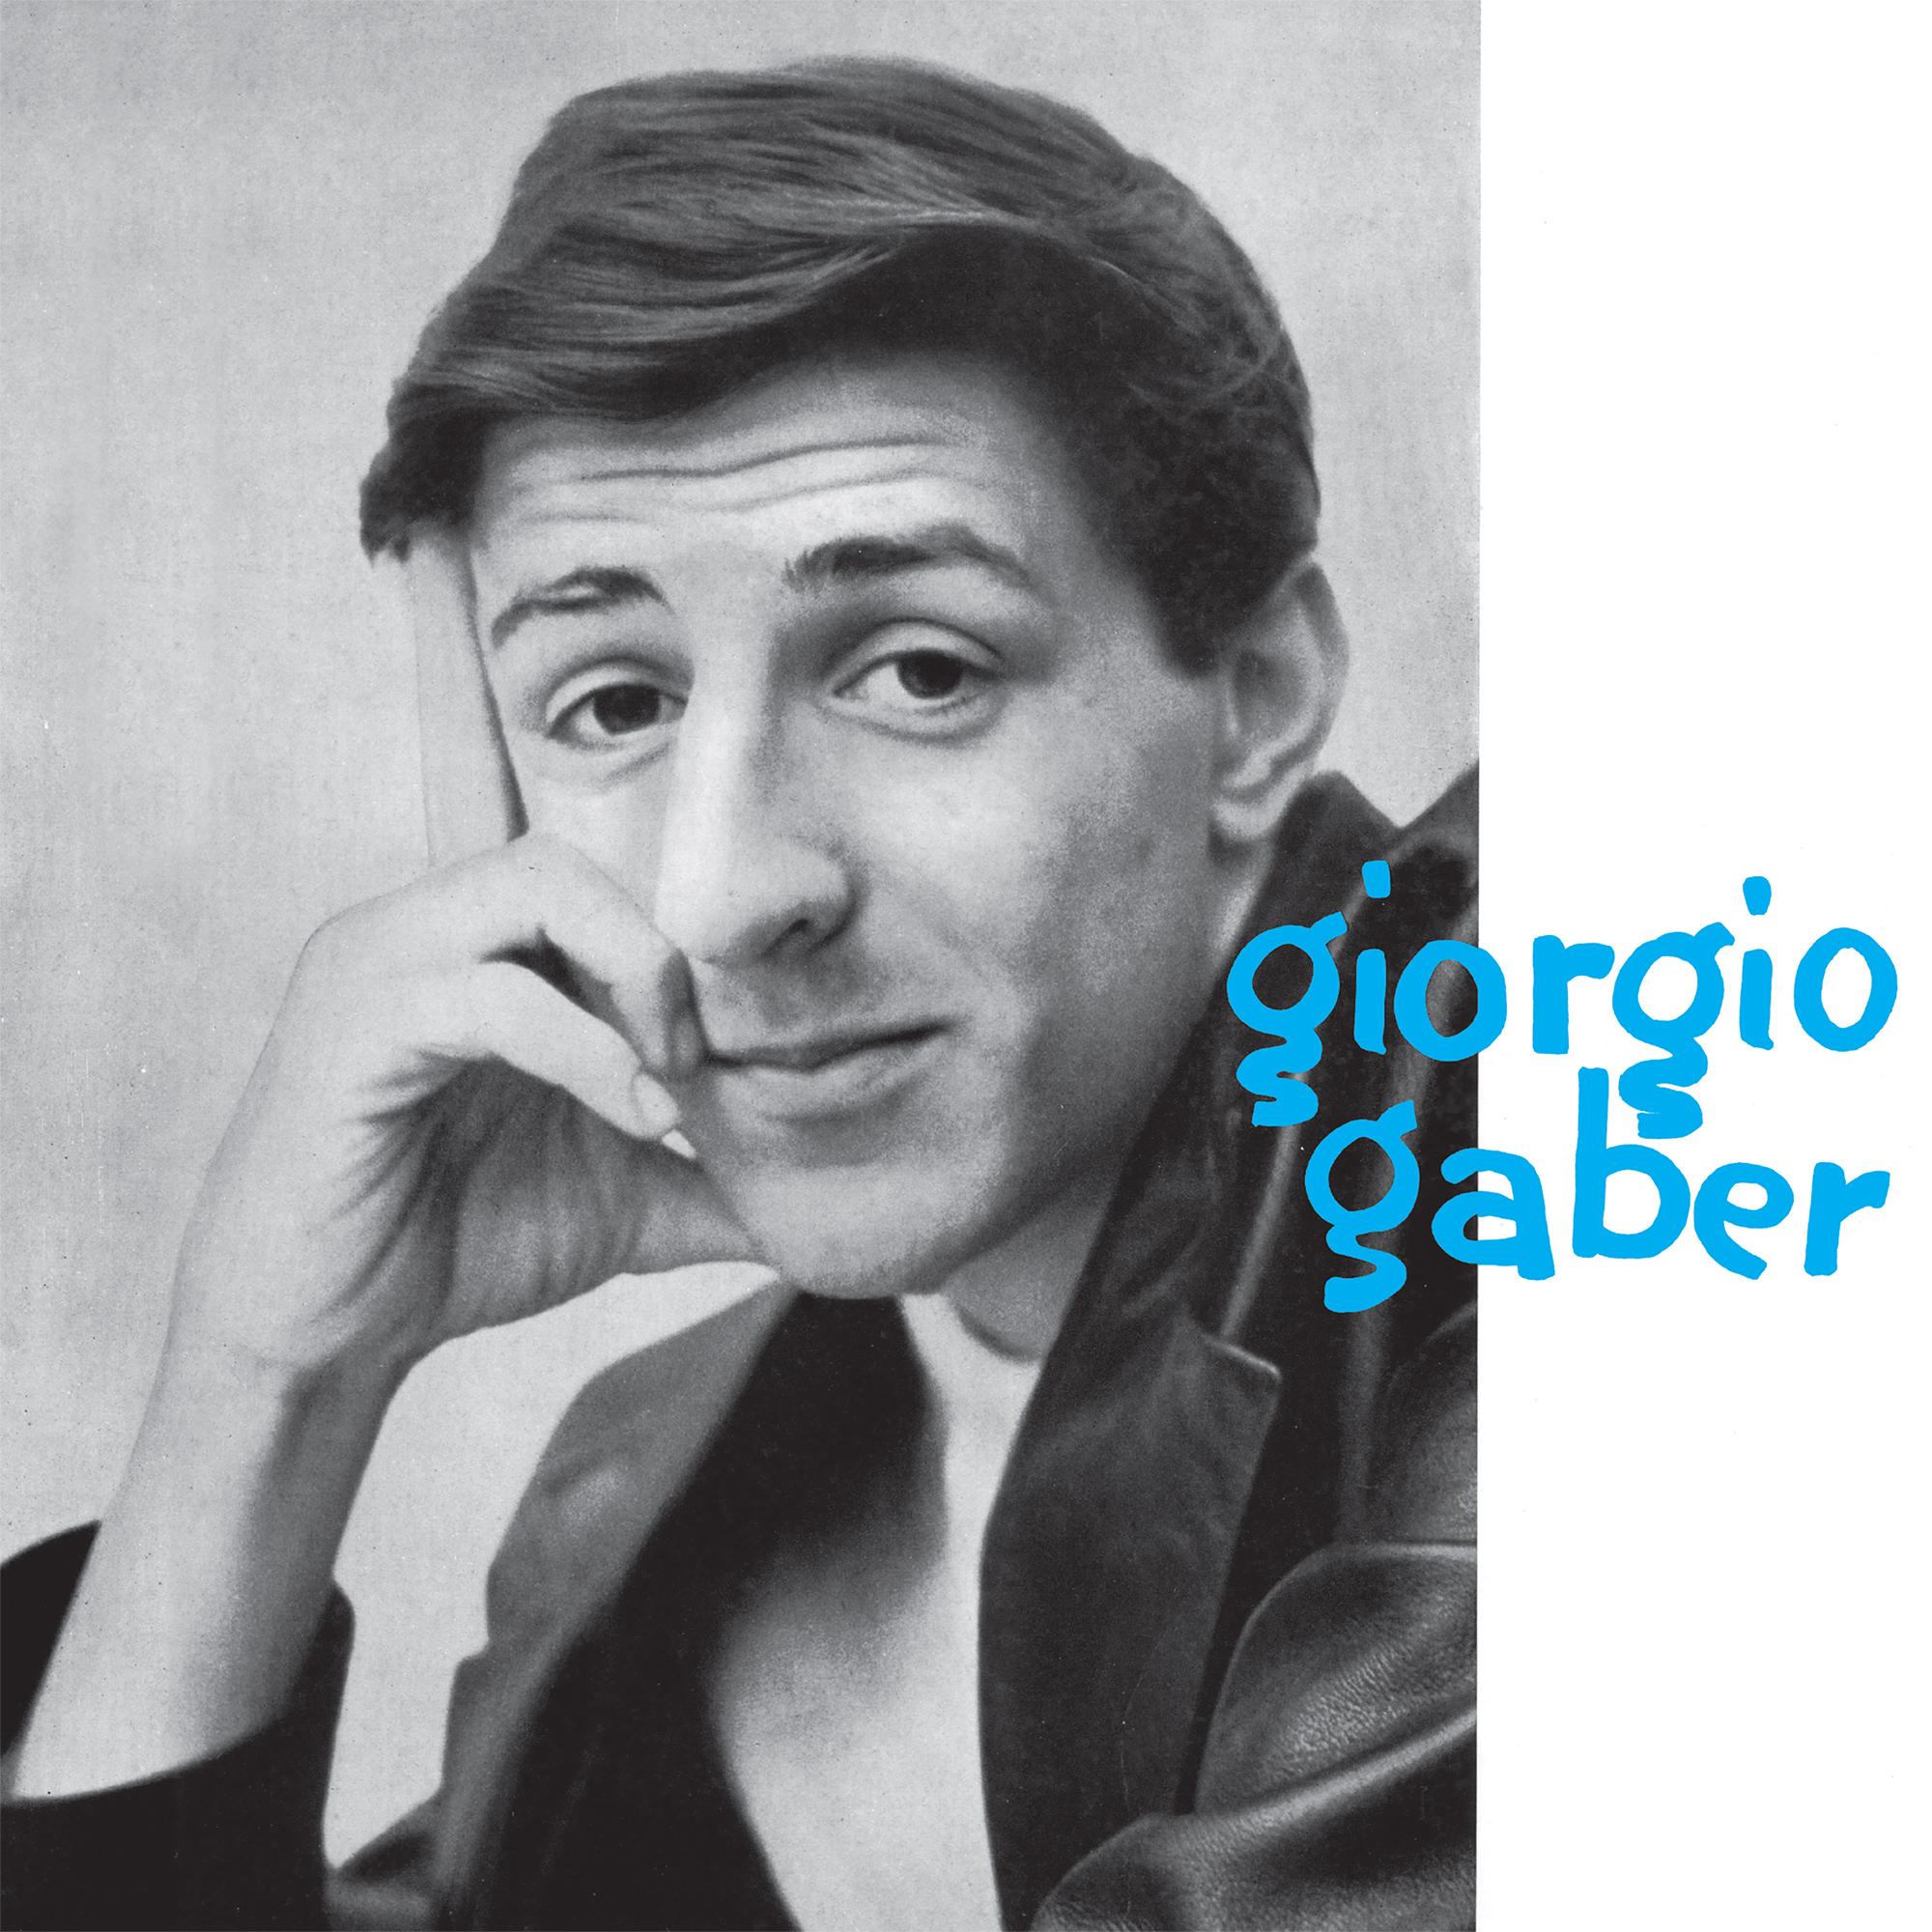 Gaber Giorgio - Giorgio Gaber Lp 180 Gr. - Bild 1 von 1